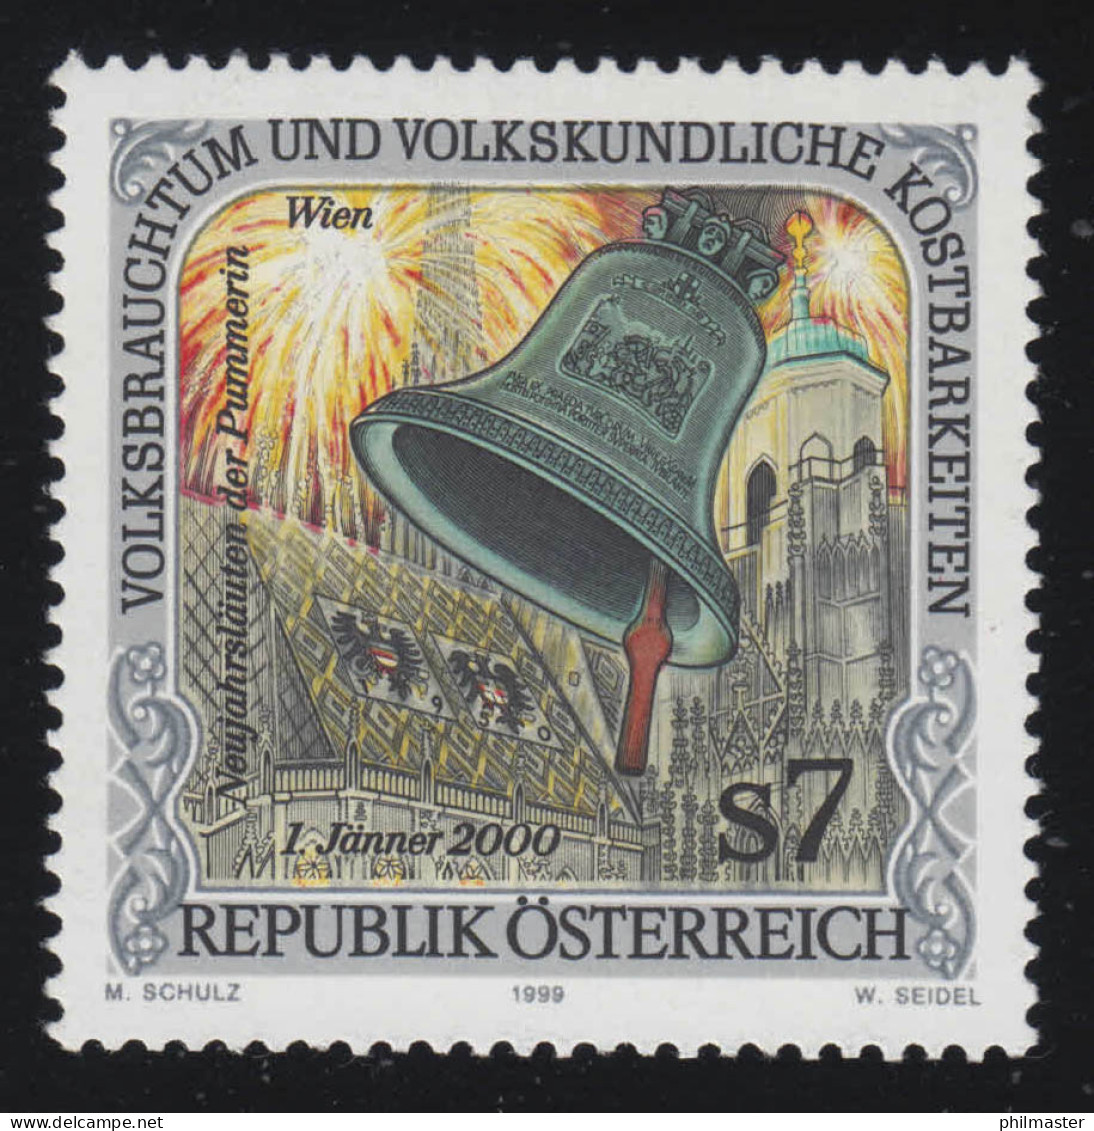 2299 Volksbrauchtum & Kostbarkeiten: Neujahrsleuten Der "Pummerin", Wien 7 S, ** - Unused Stamps